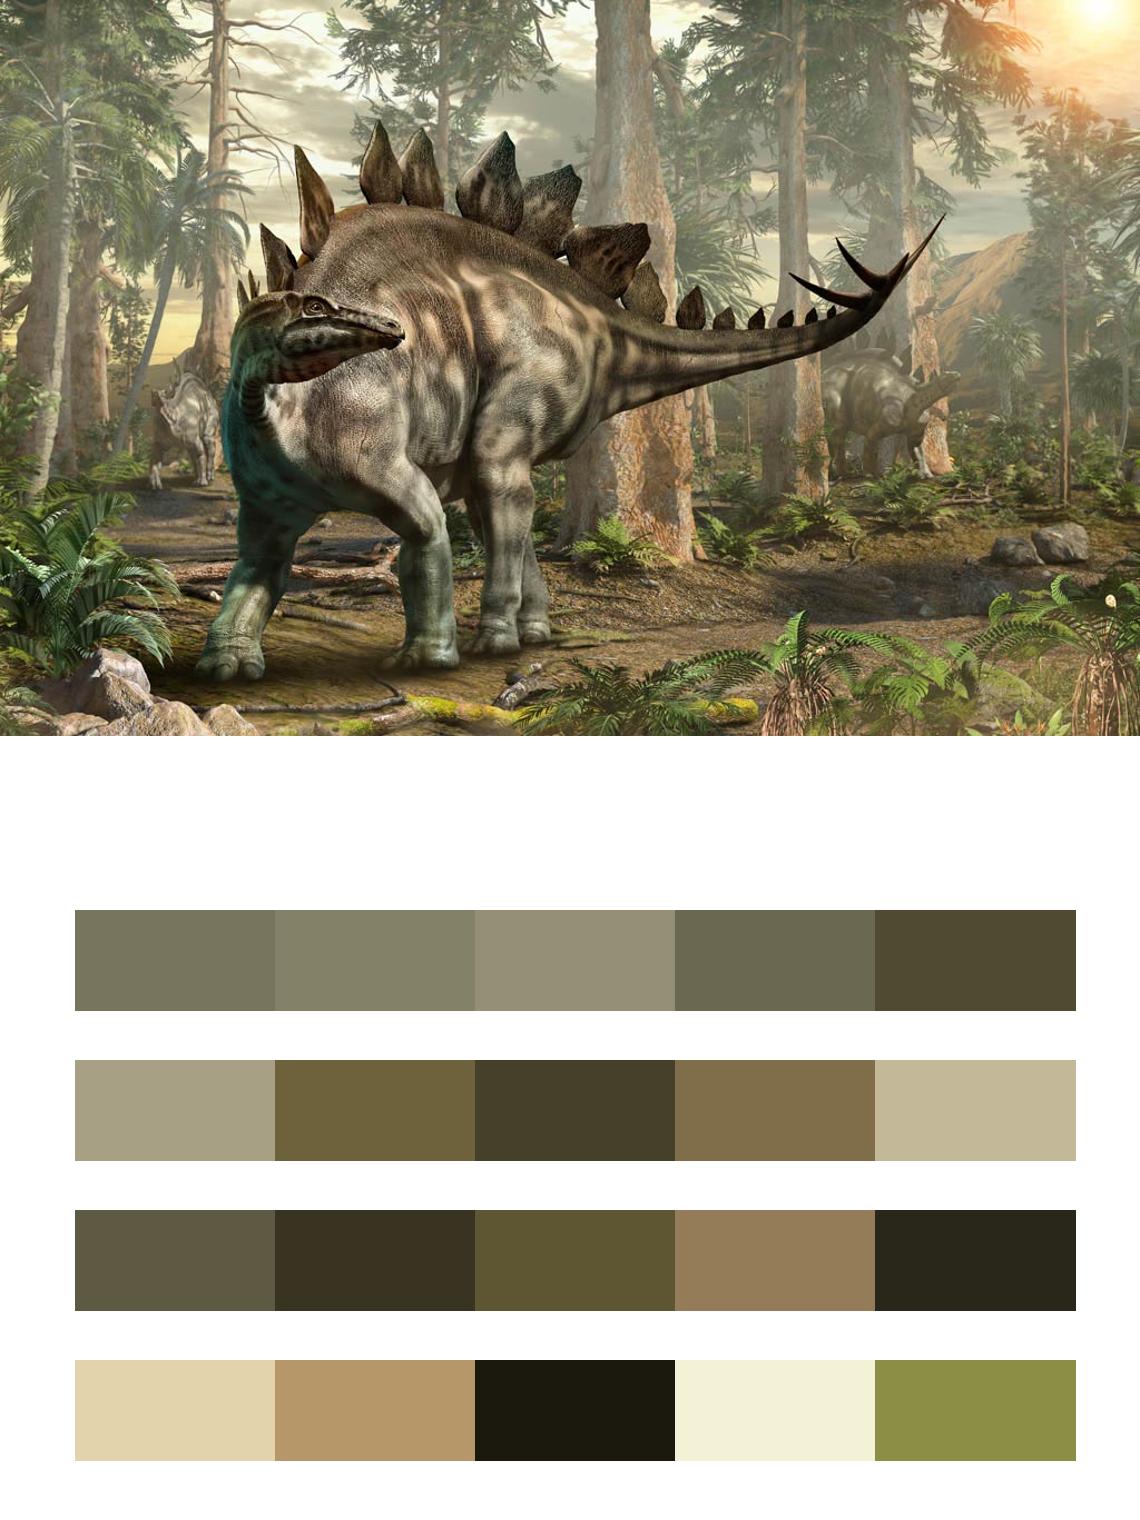 Динозавр Стегозавр цвета